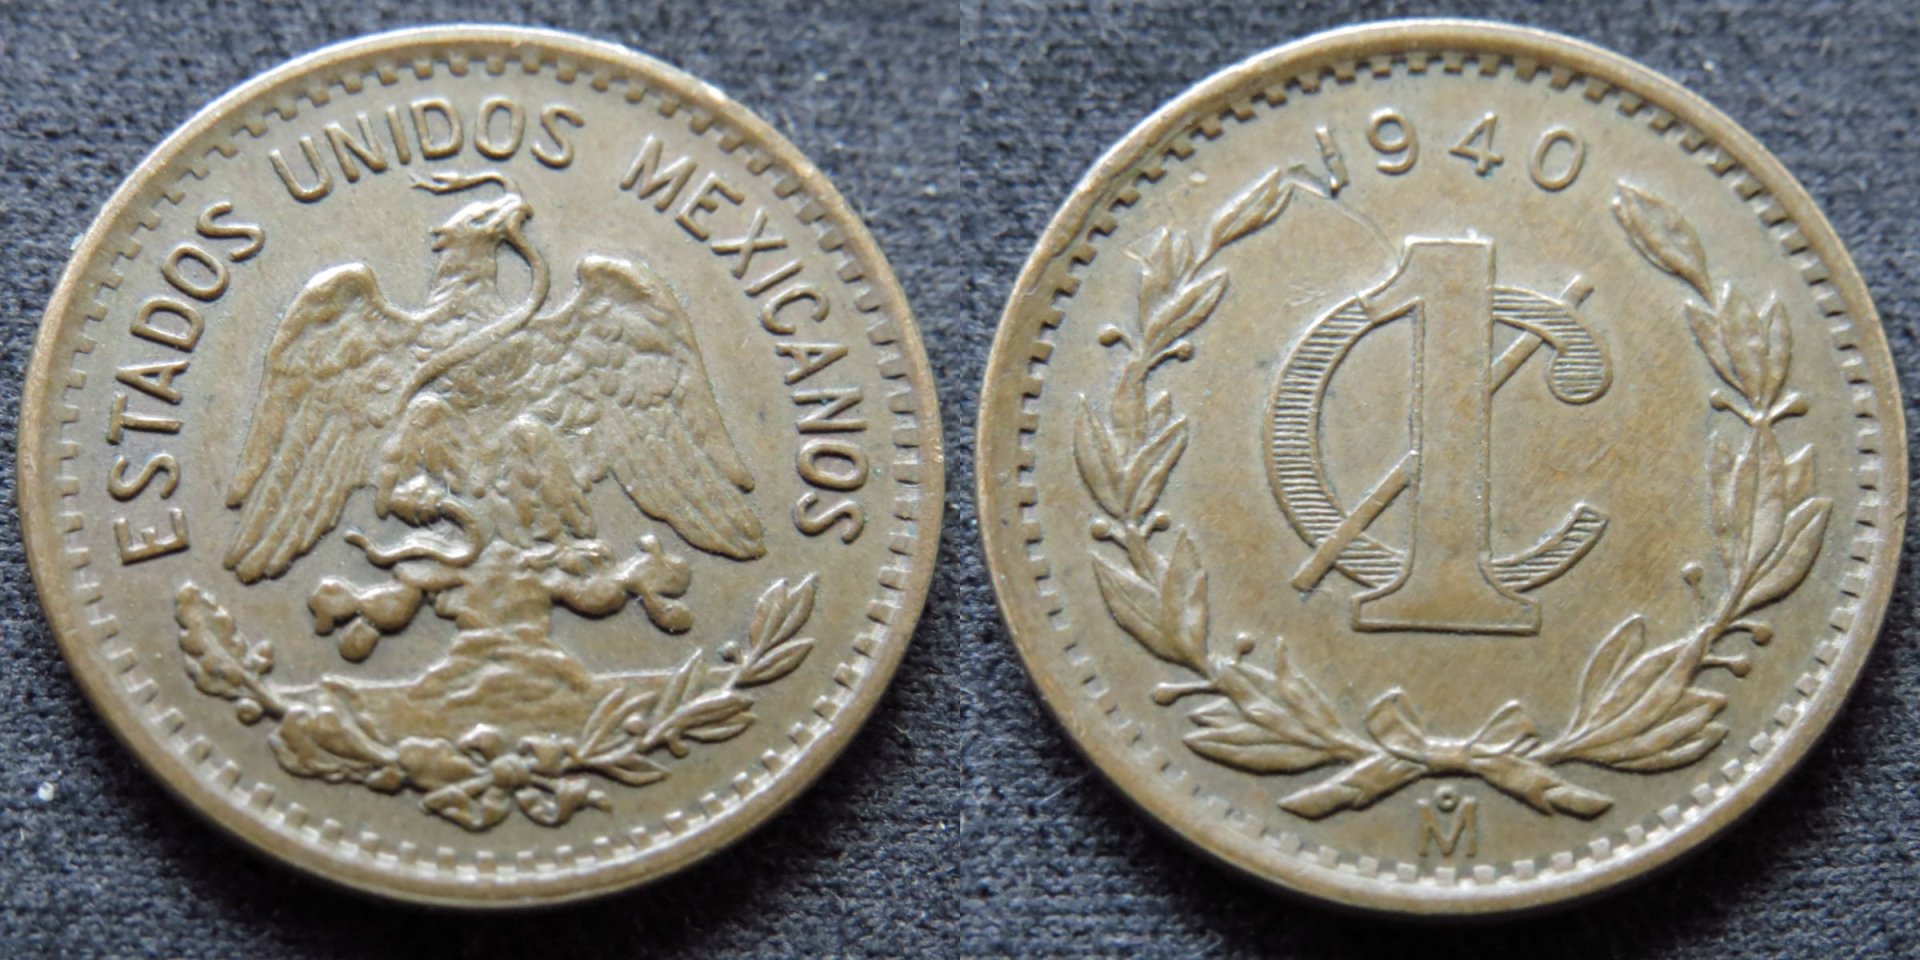 Mexico 1940 1 Centavo.jpg